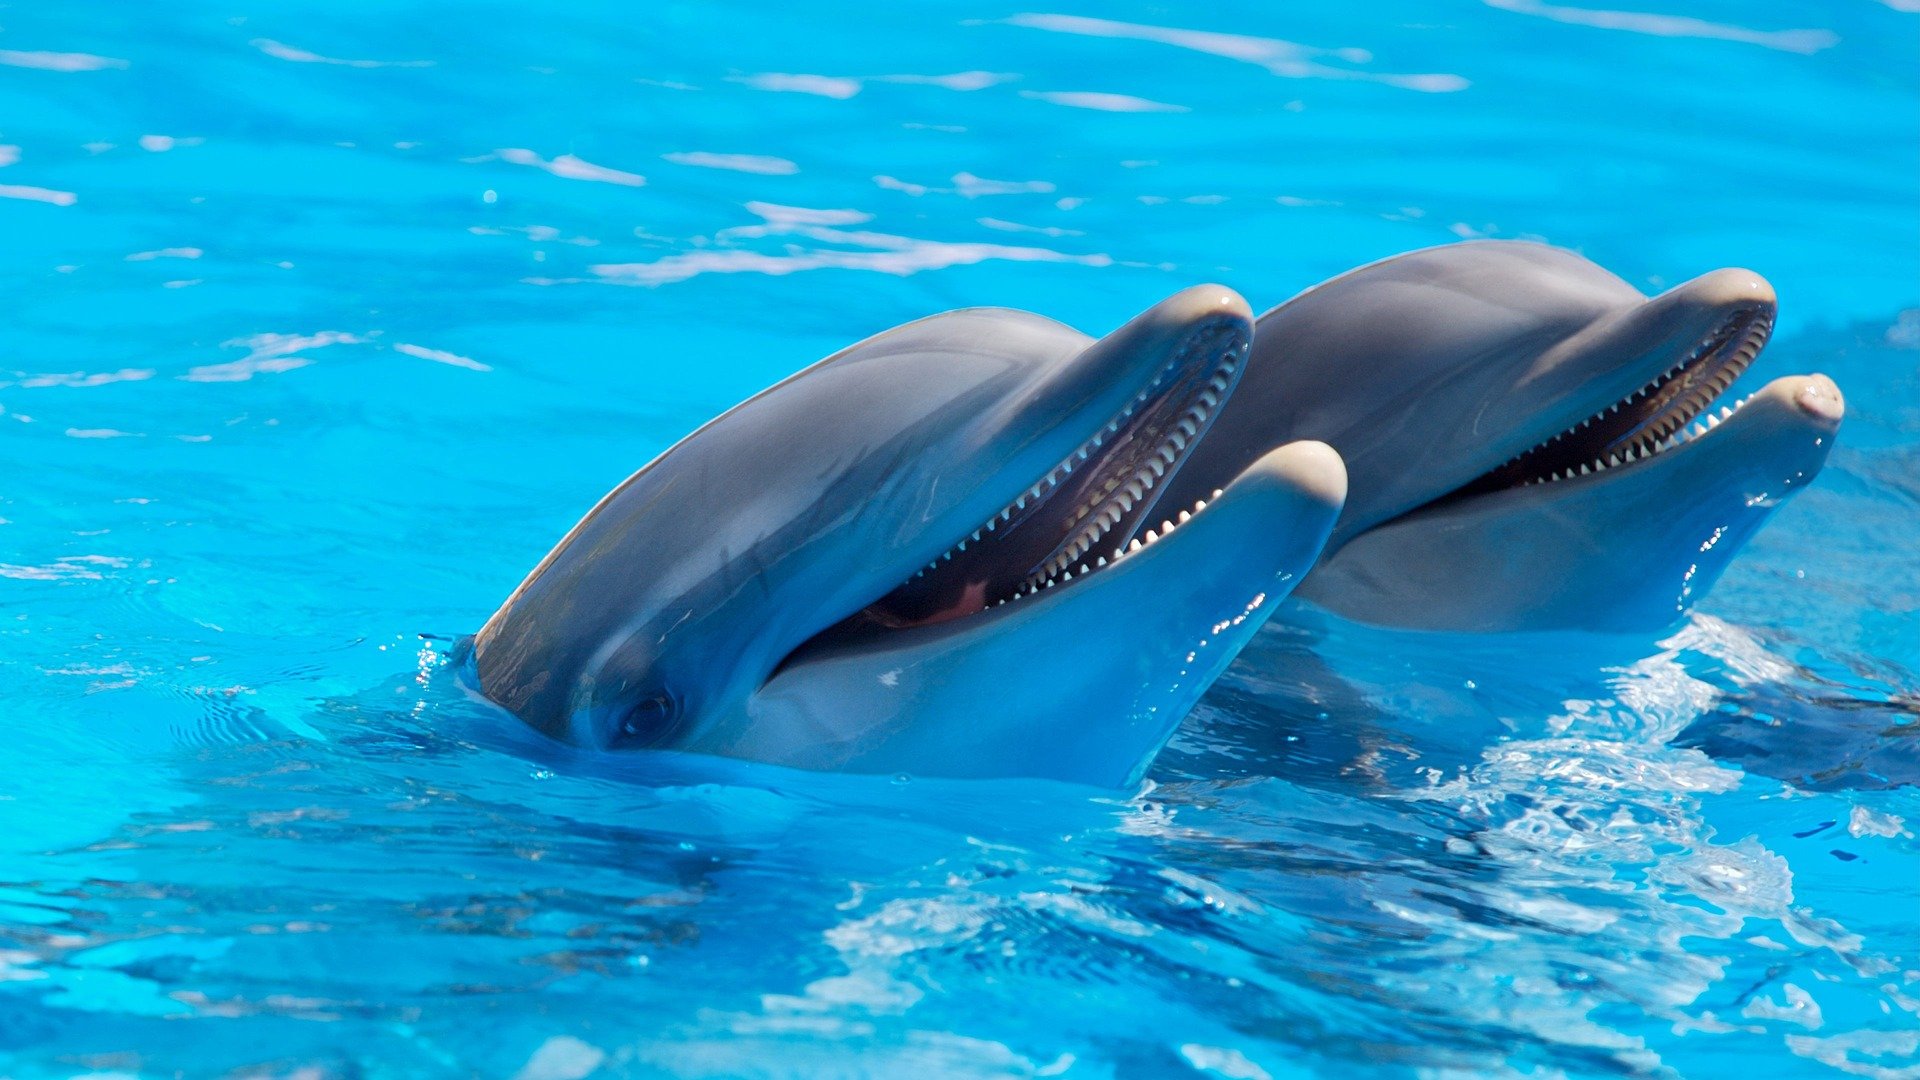 Os golfinhos usam padrões para se comunicar | Imagem: Pixabay